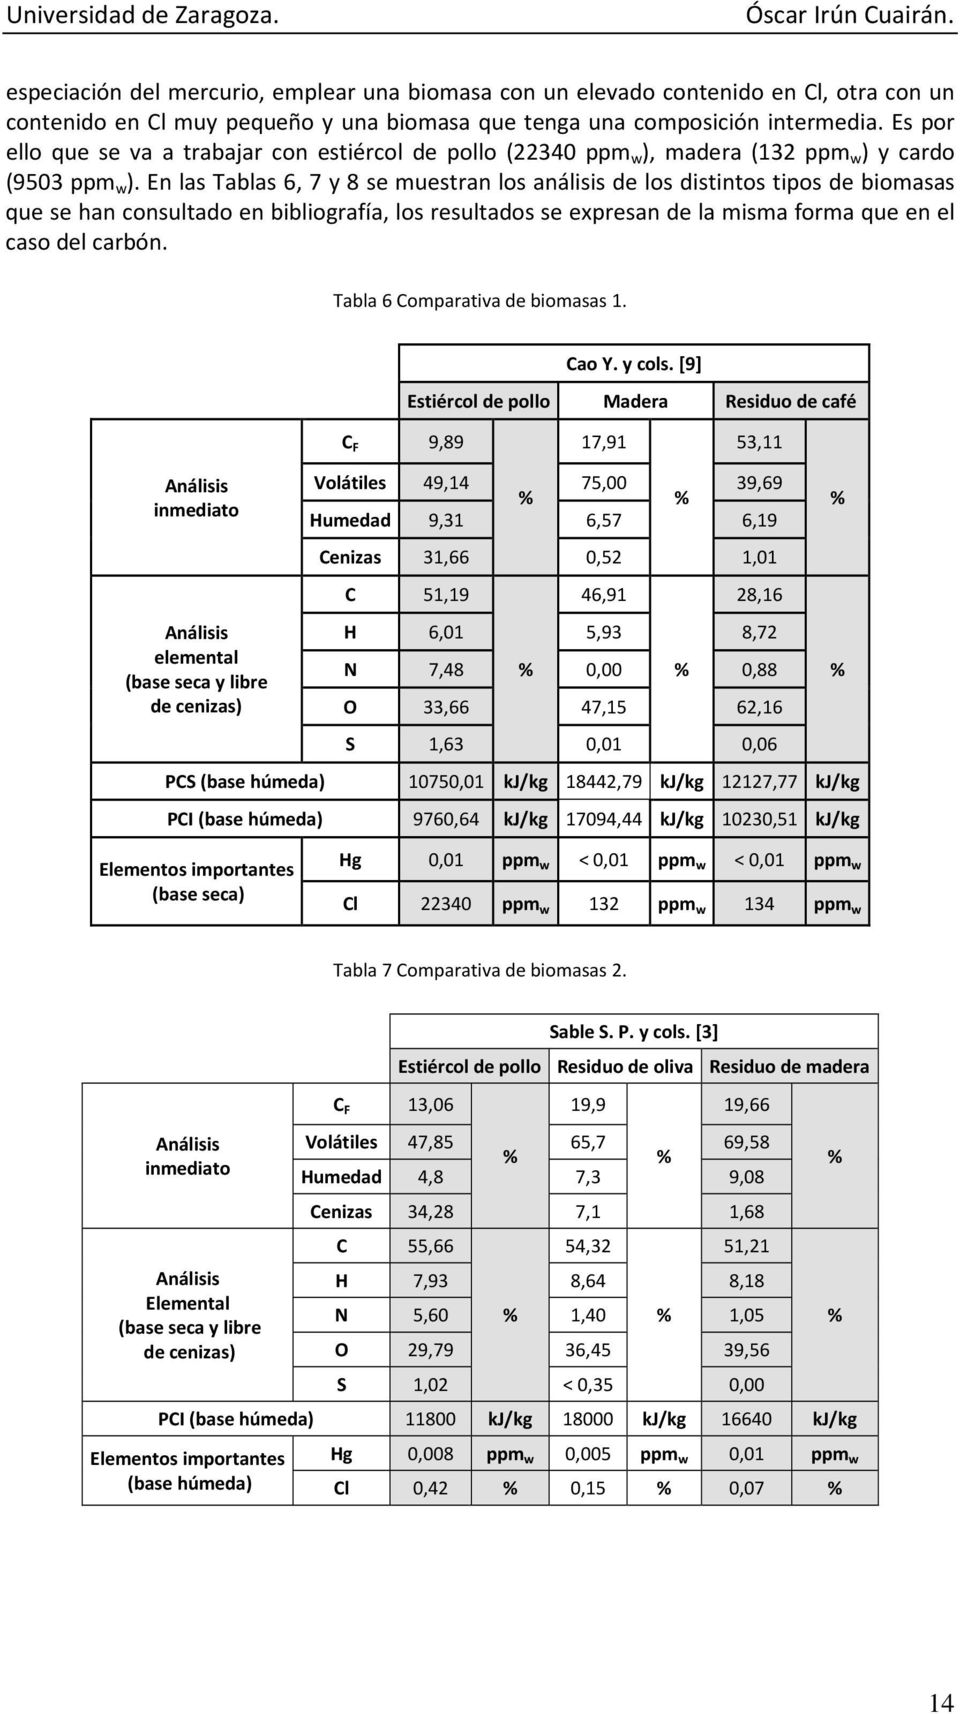 En las Tablas 6, 7 y 8 se muestran los análisis de los distintos tipos de biomasas que se han consultado en bibliografía, los resultados se expresan de la misma forma que en el caso del carbón.